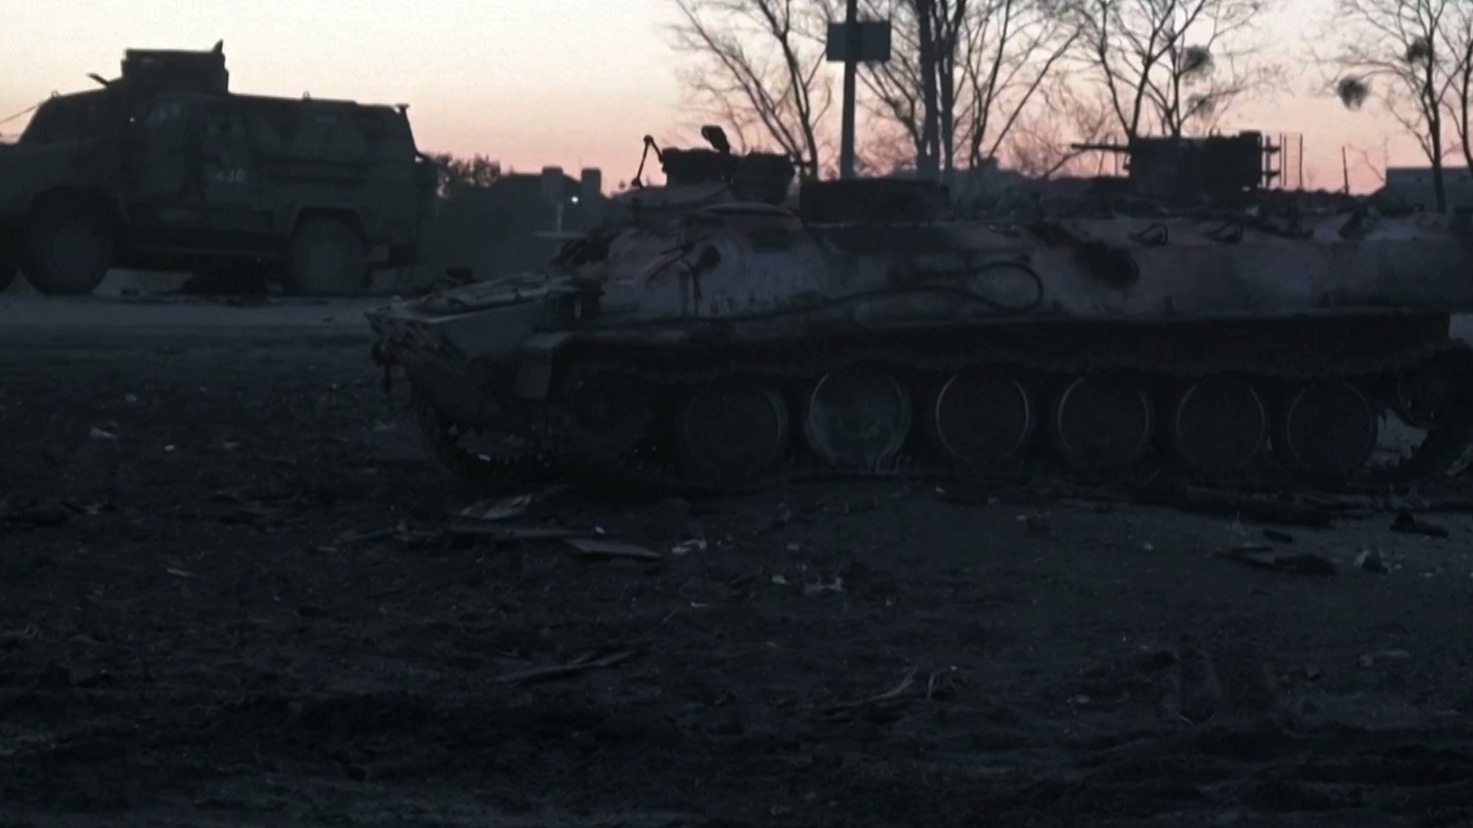 Wojna w Ukrainie. Rosjanie weszli do miasta Sumy, zaciekła walka toczy się wokół Charkowa